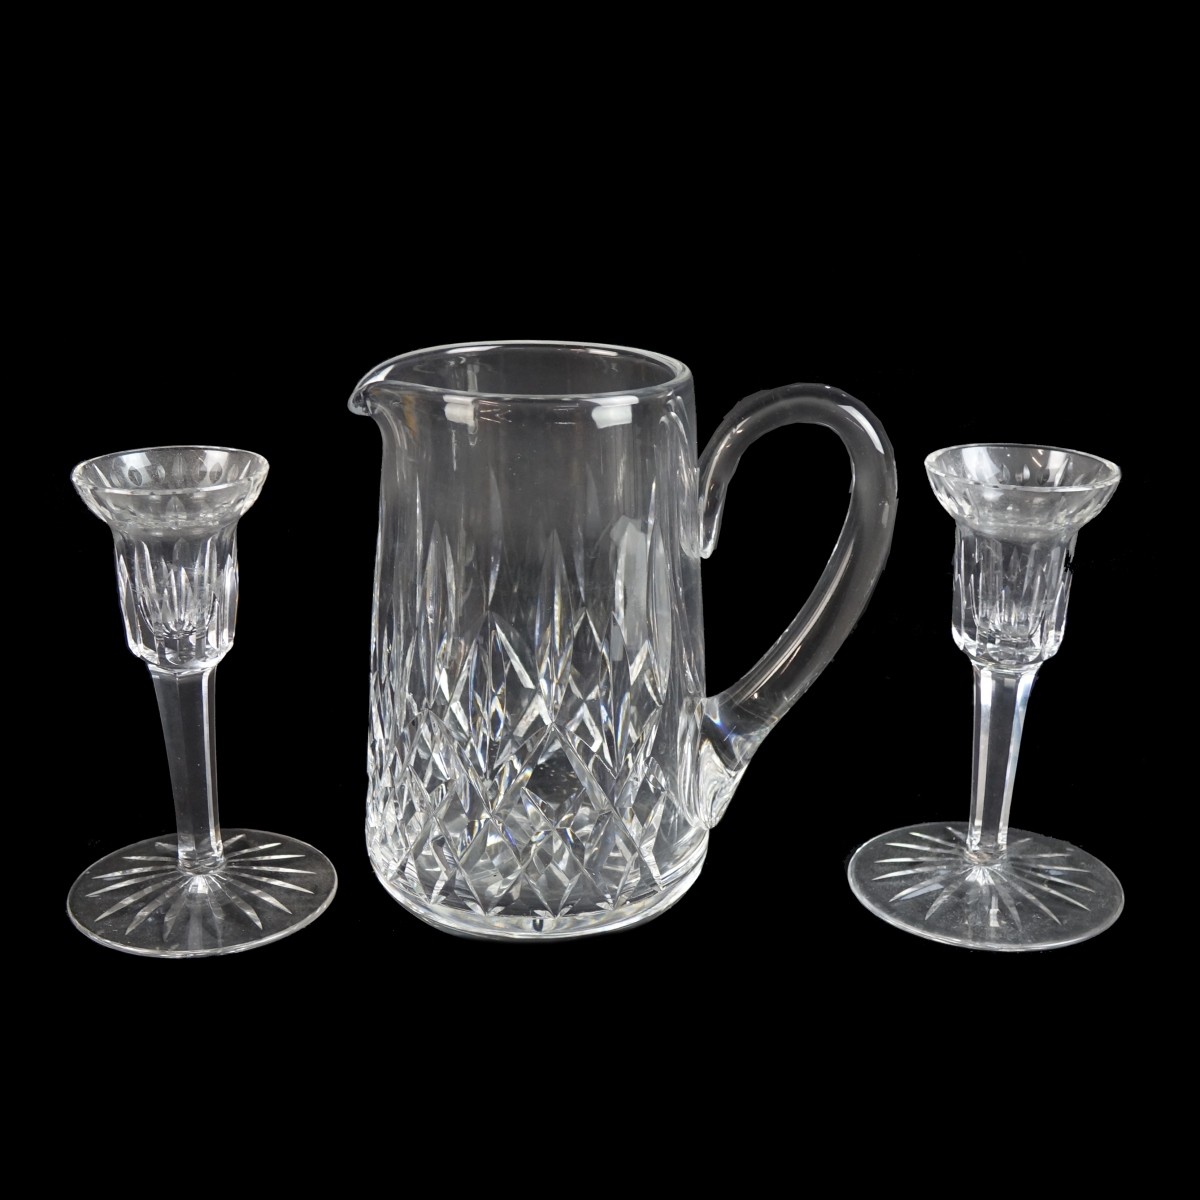 Three (3) Waterford Crystal Tableware